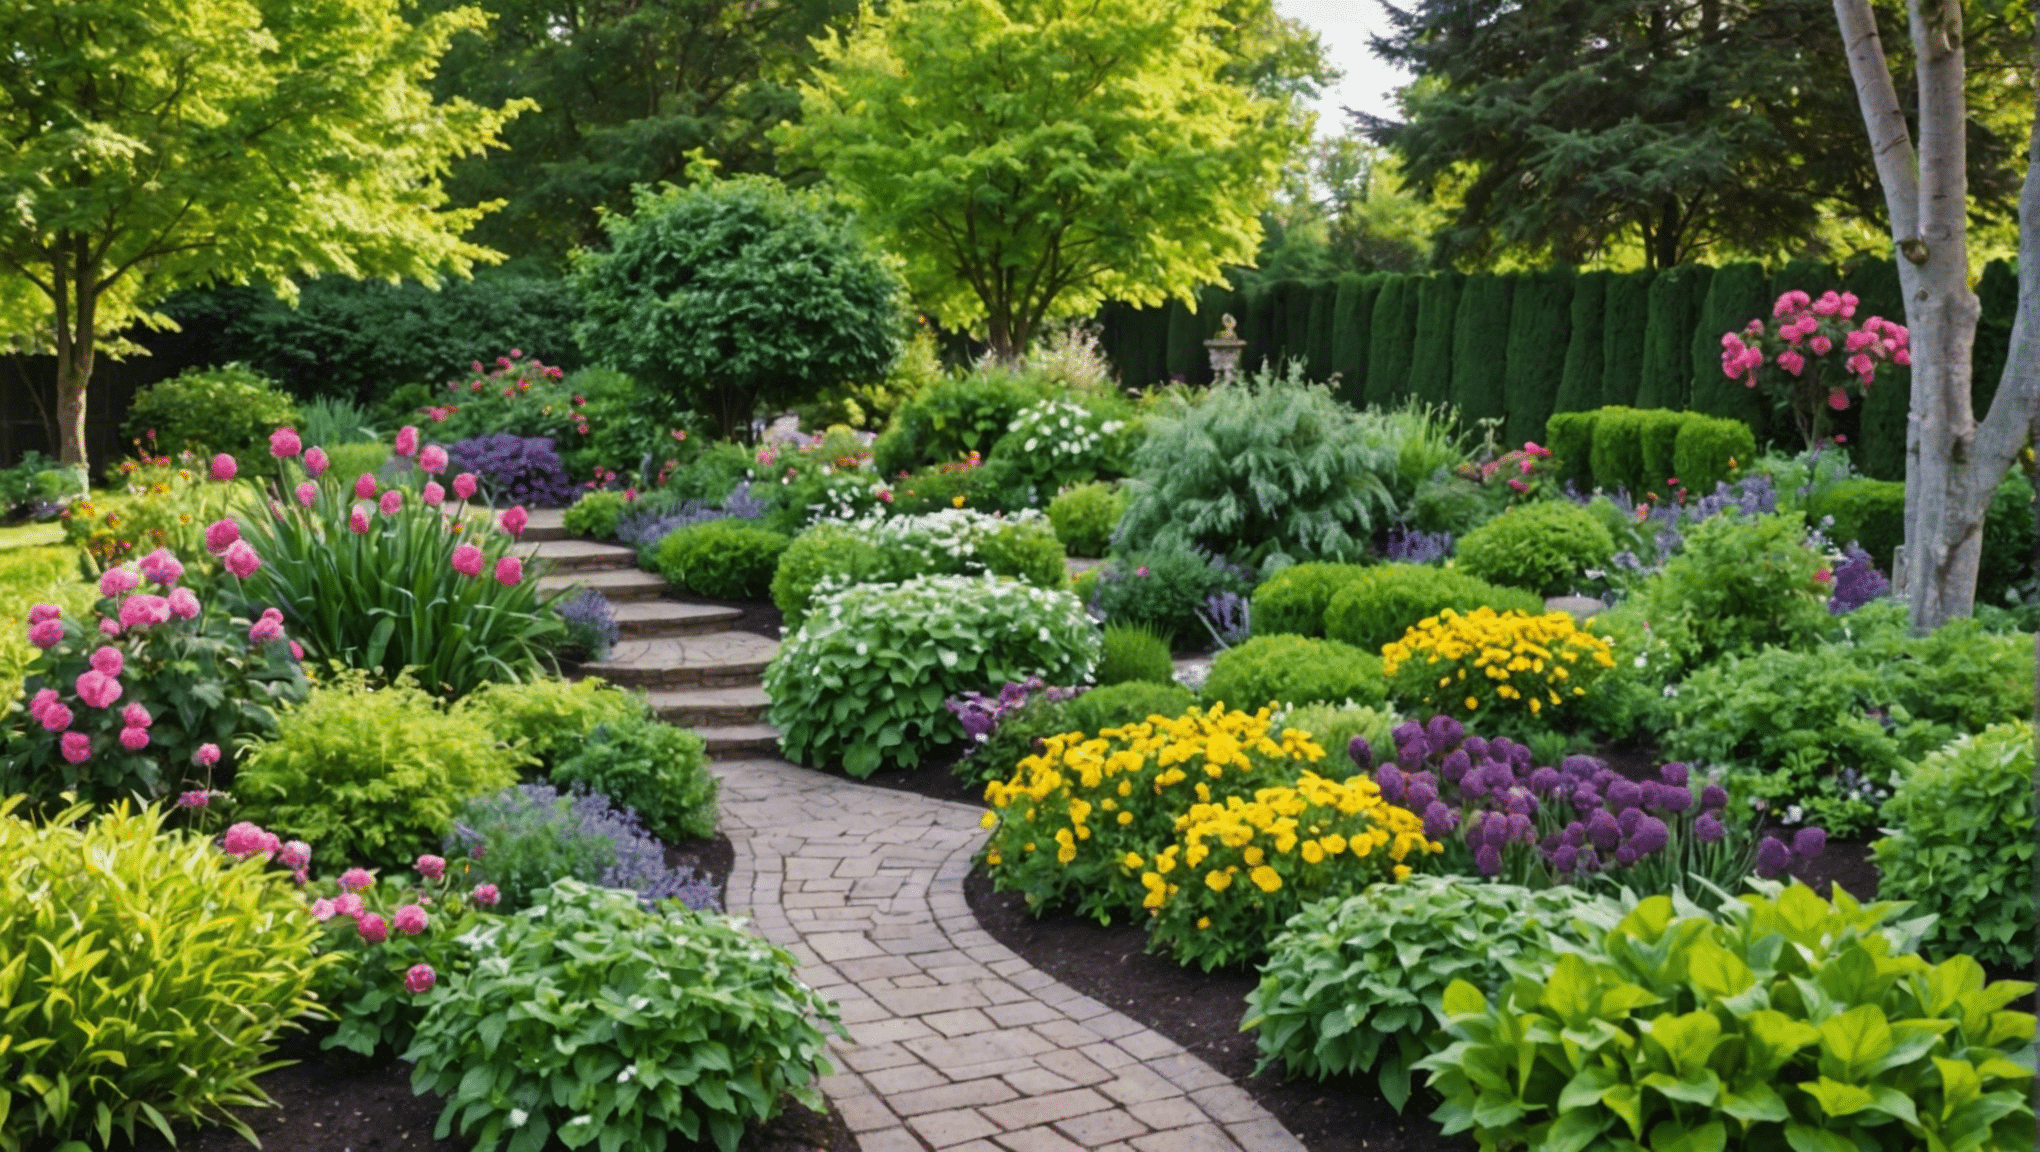 scopri i libri essenziali sul giardinaggio per principianti e avvia il tuo viaggio nel giardinaggio con consigli di esperti e suggerimenti pratici.